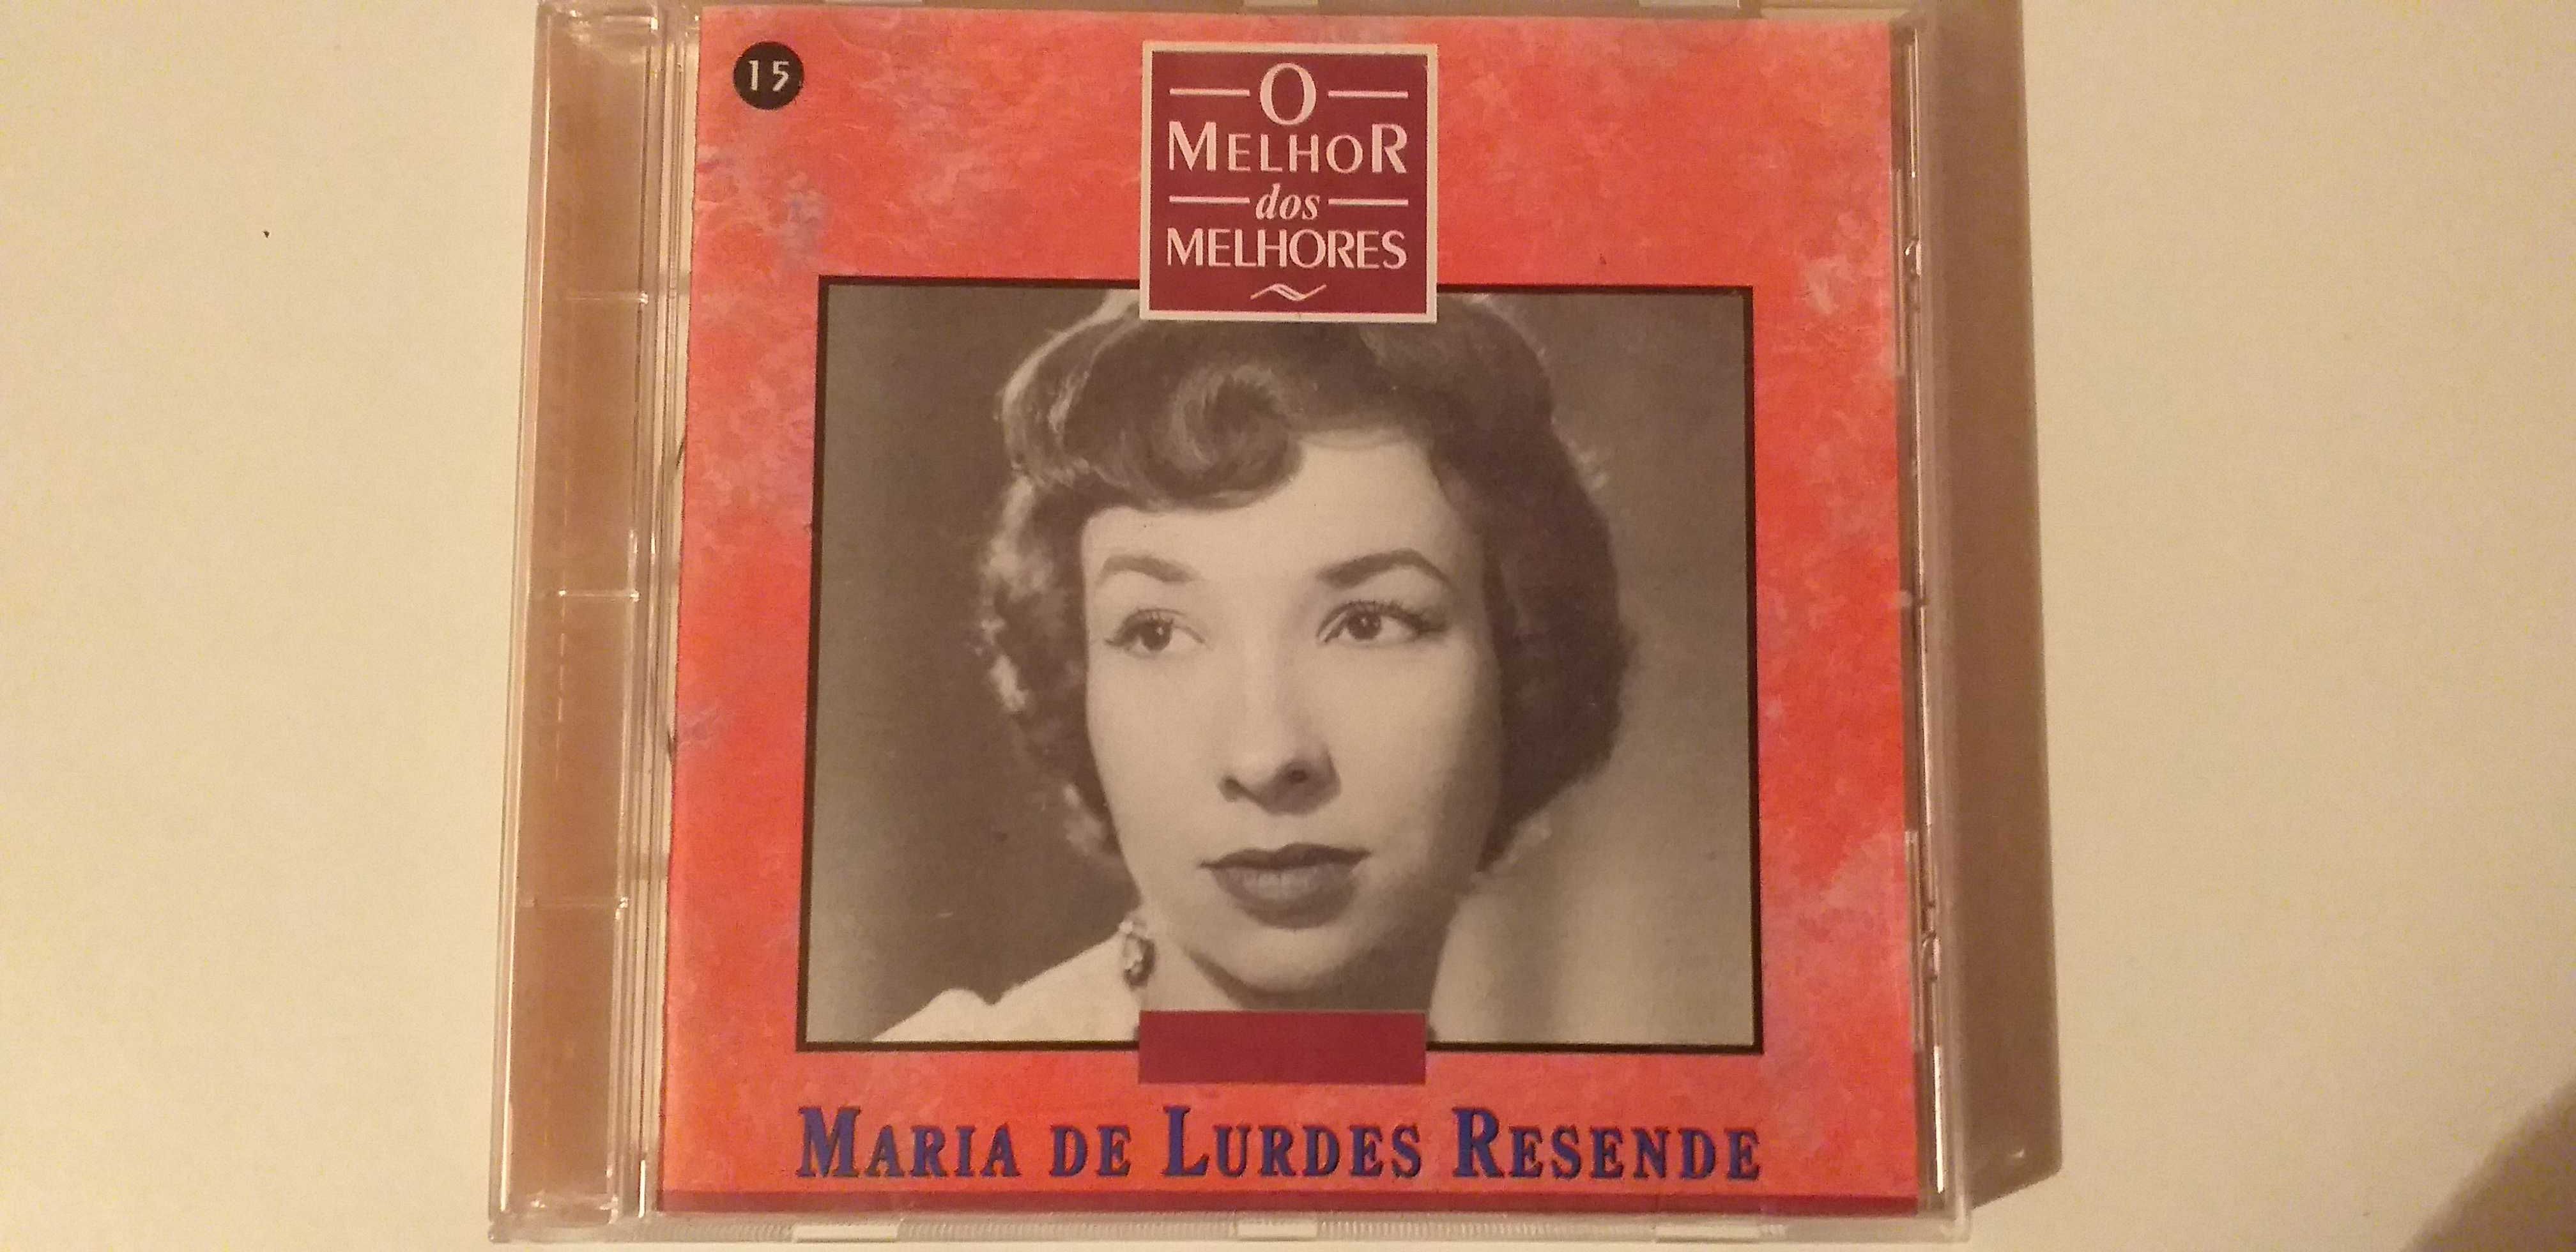 Maria de Lurdes Resende - " O Melhor dos Melhores " - CD - portes incl